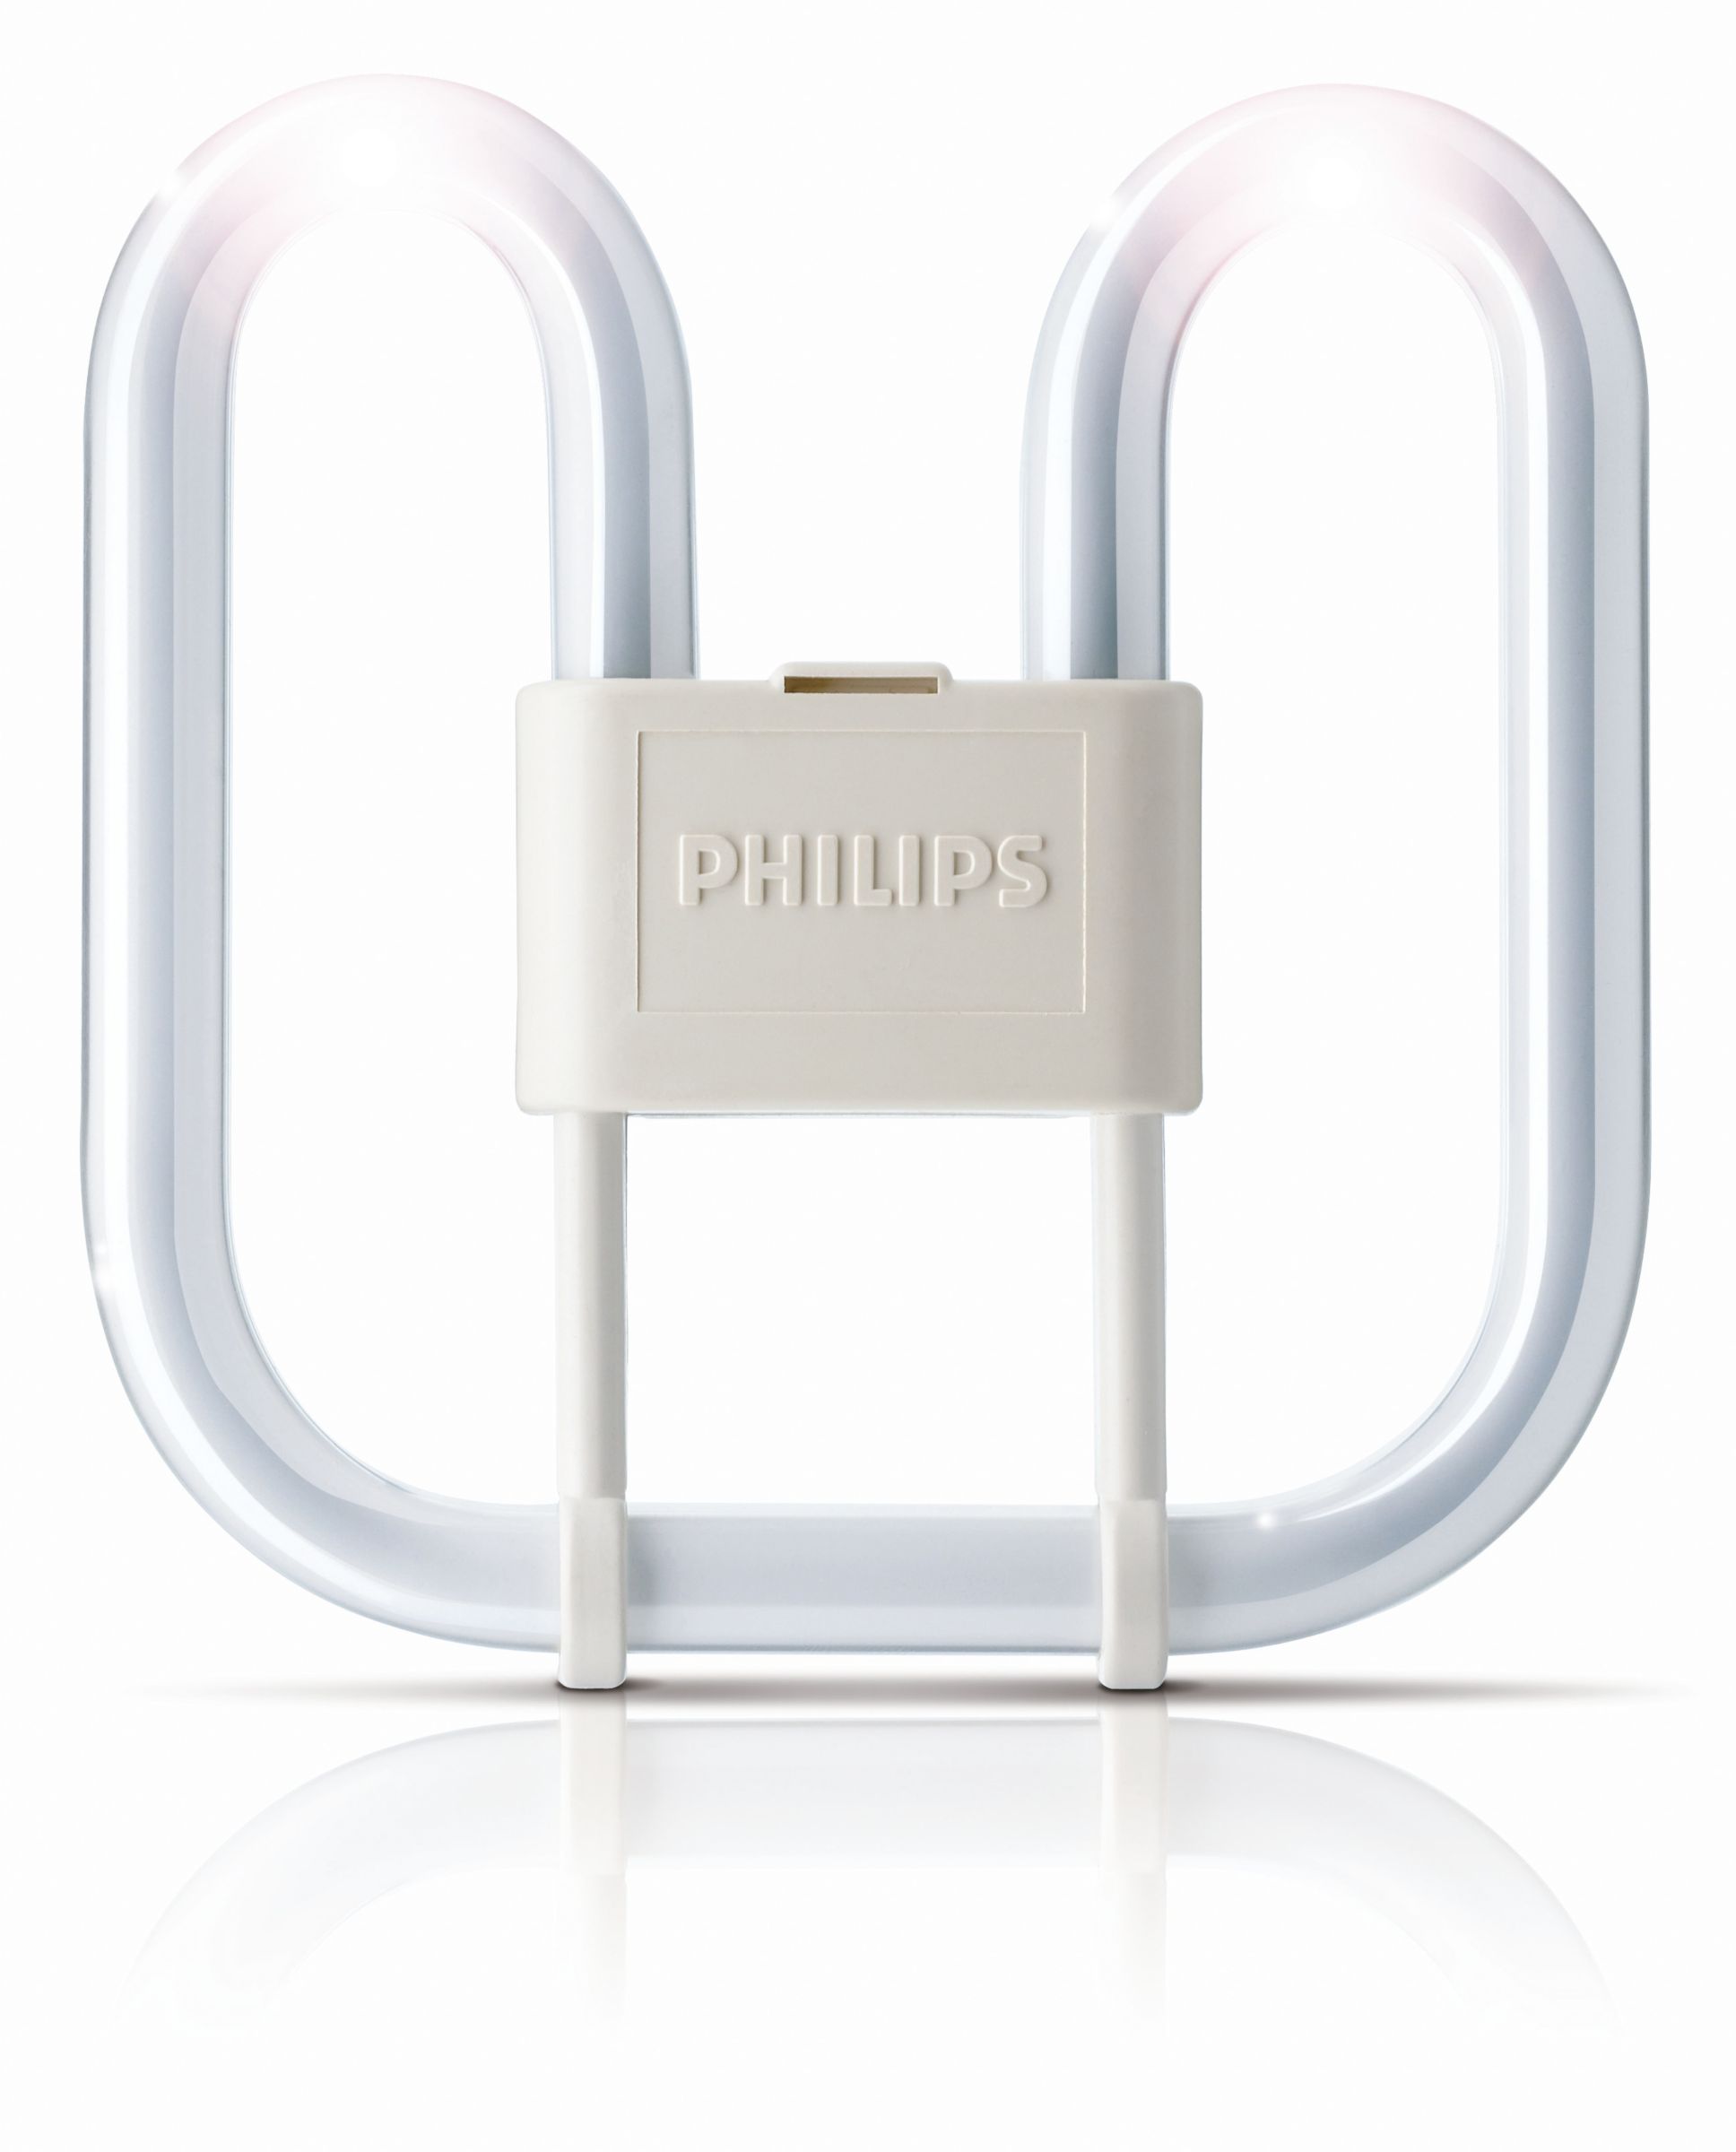 Philips Lighting Kompaktleuchtstofflampe PL-Q Pro 38W/830/4P GR10 weiß Neonröhre 